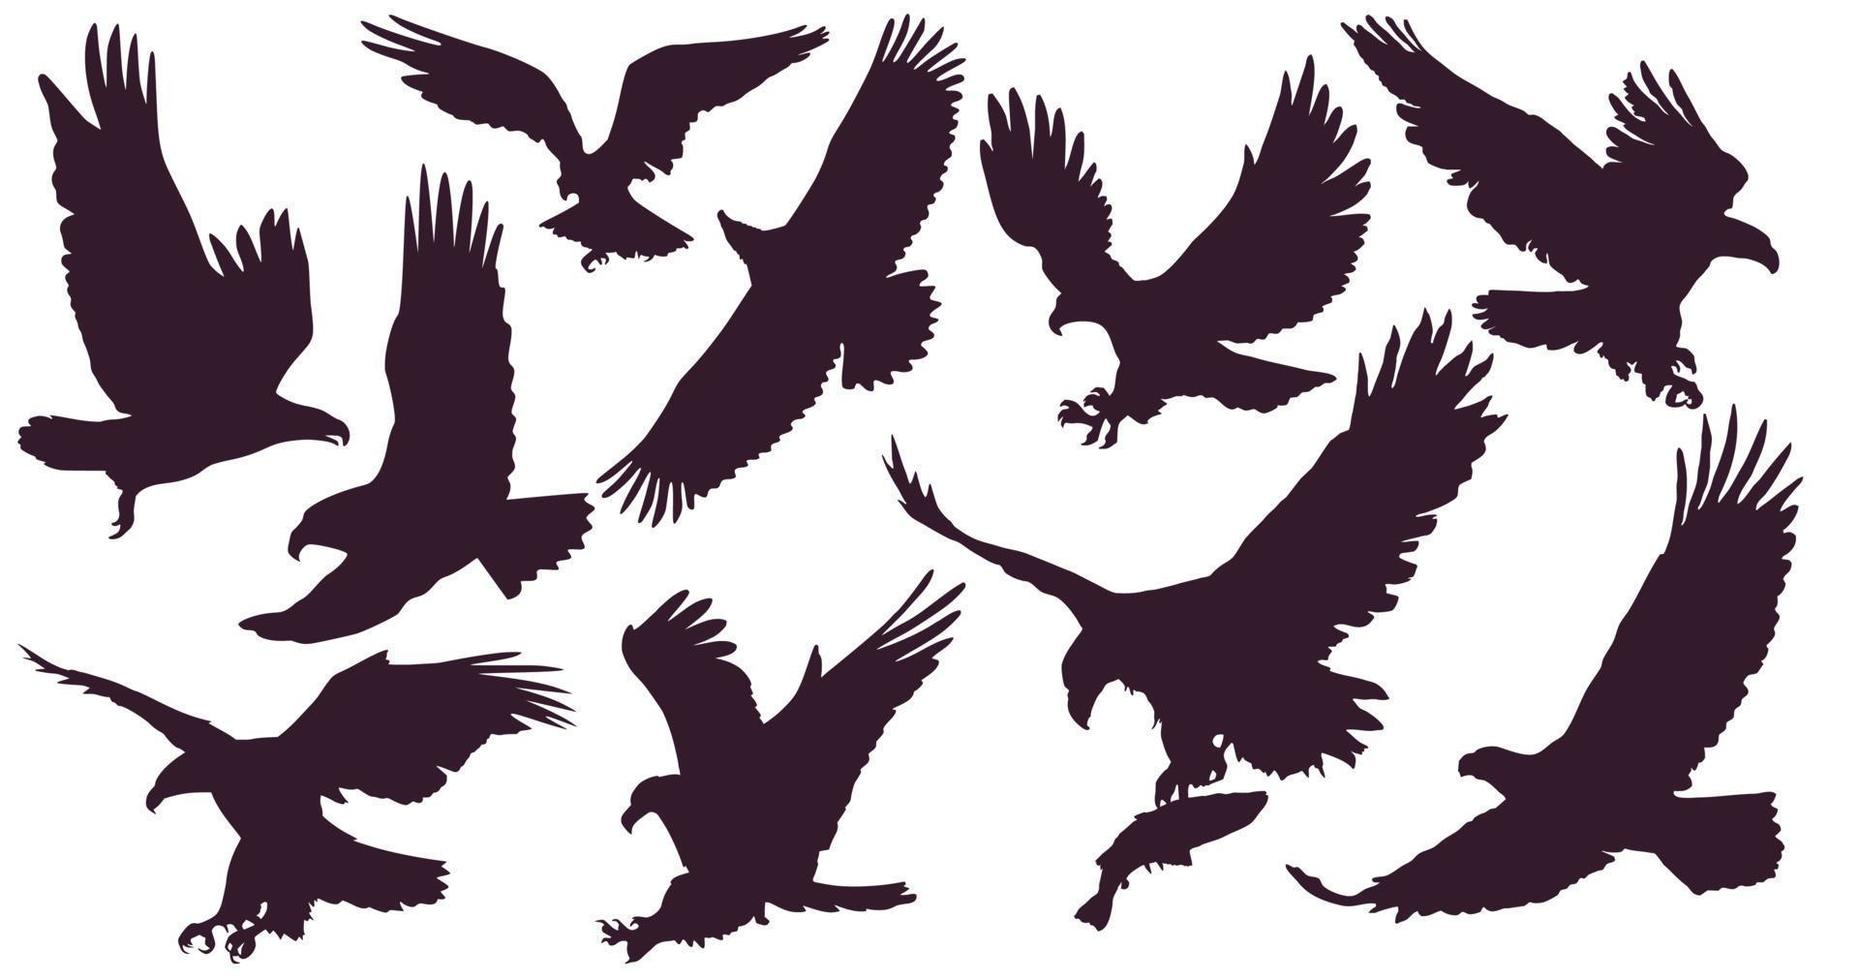 águilas conjunto de pájaro rey. 10 siluetas de águilas. un águila atacante volando en el cielo con una gran envergadura. vector